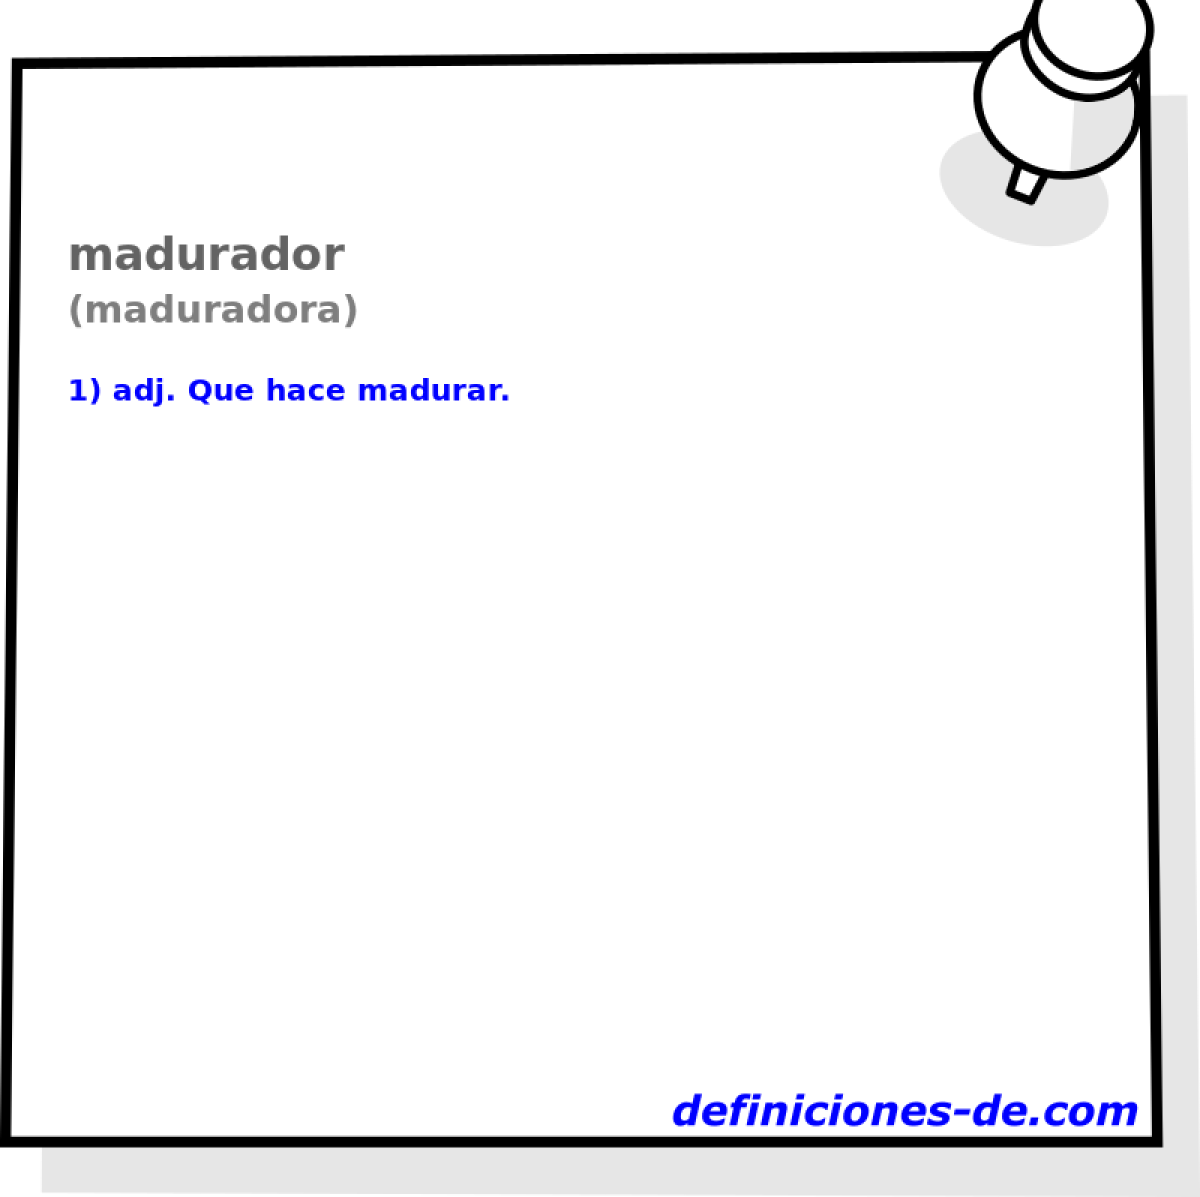 madurador (maduradora)